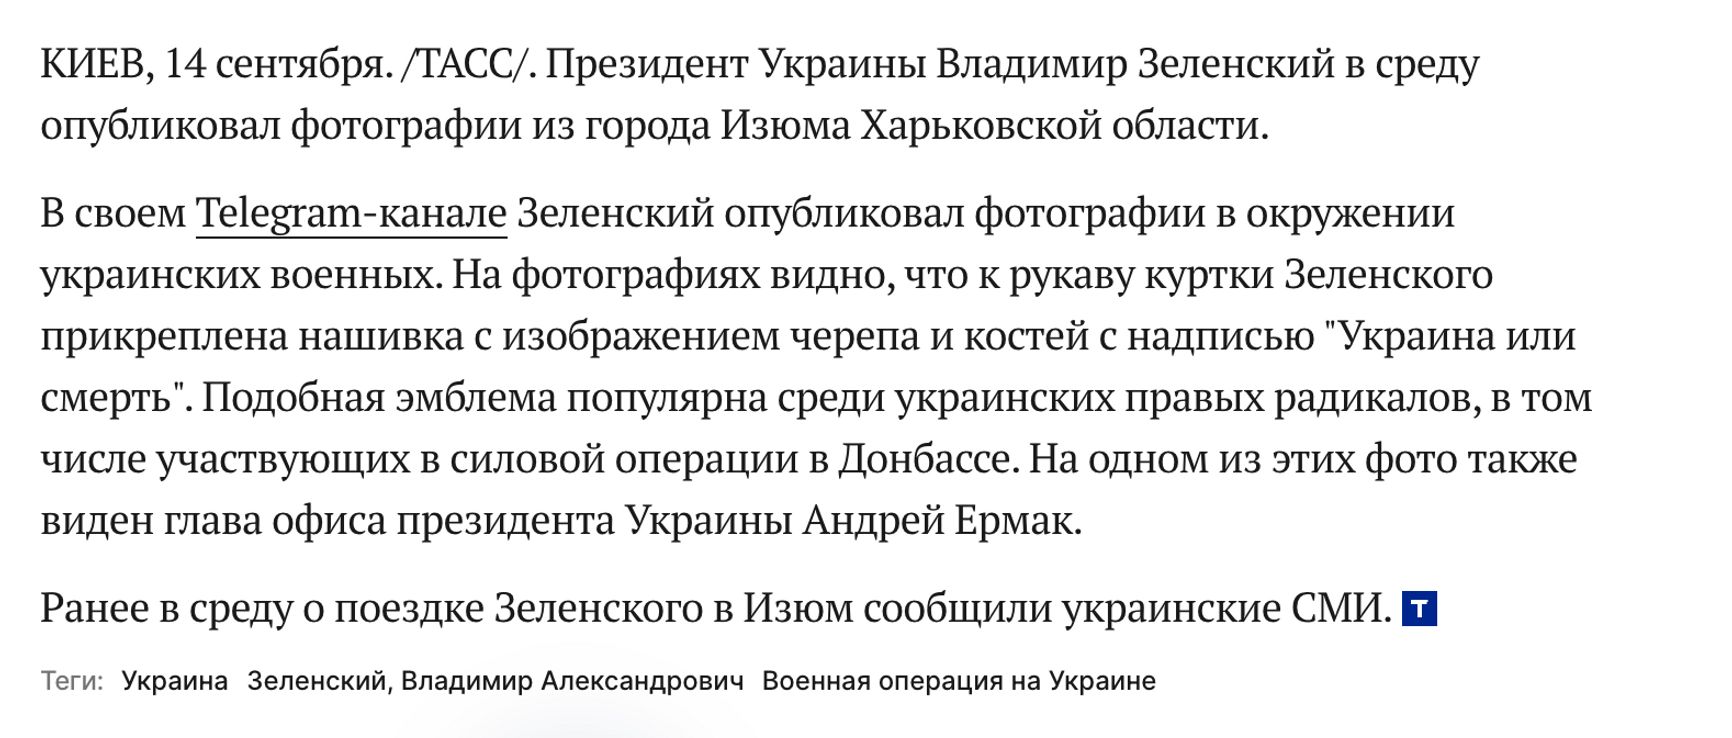 Пропагандисты осветили поездку Зеленского в Изюм. Они не упомянули освобождение города от России, но заметили «нацистскую символику»